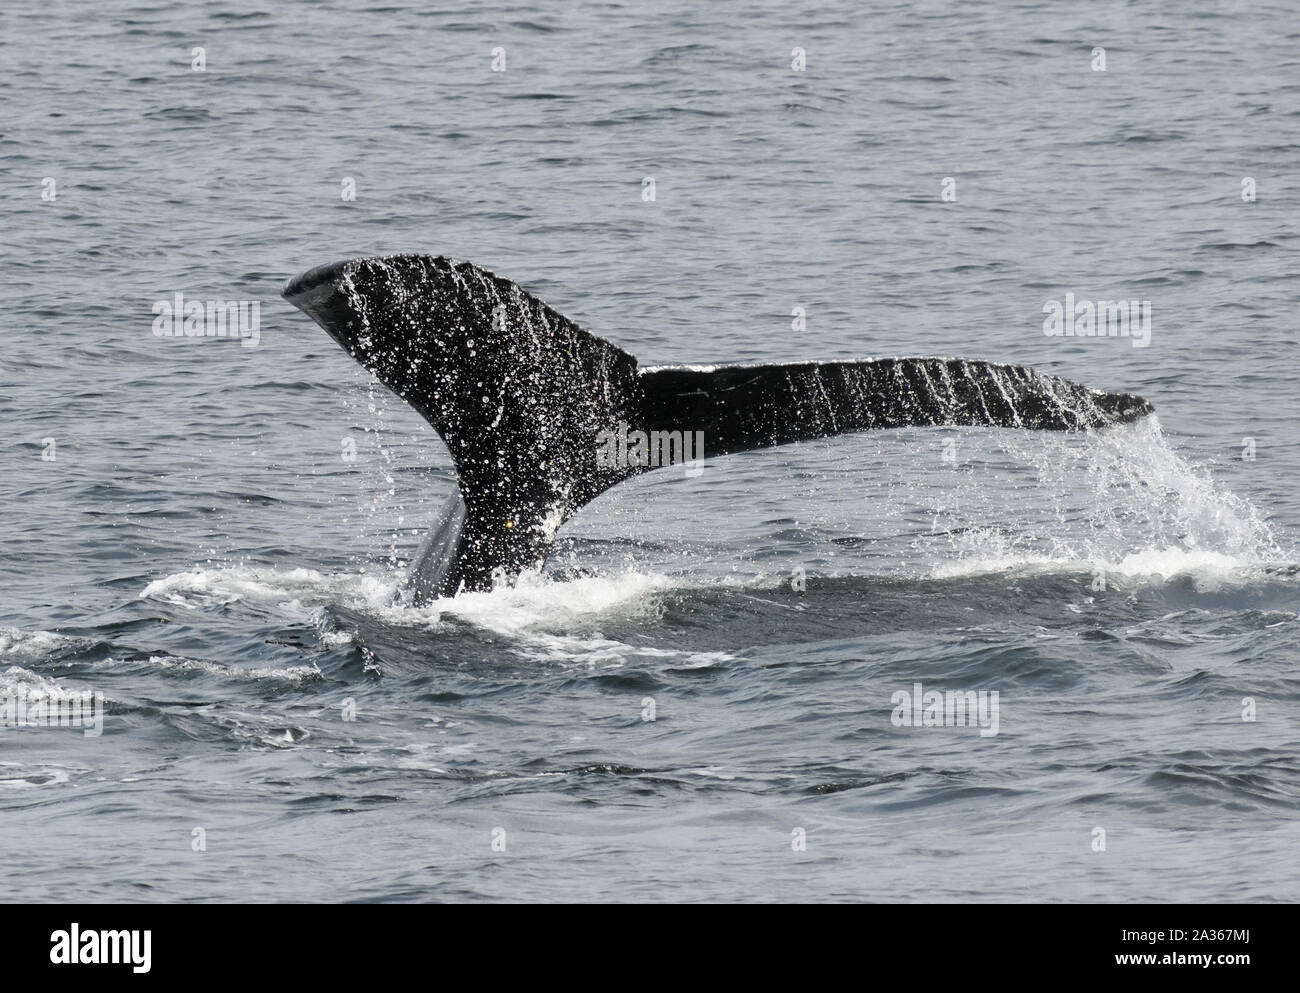 el fluke de una ballena jorobada de buceo (Megaptera novaeangliae). Prince Rupert, British Columbia, Canadá. Foto de stock